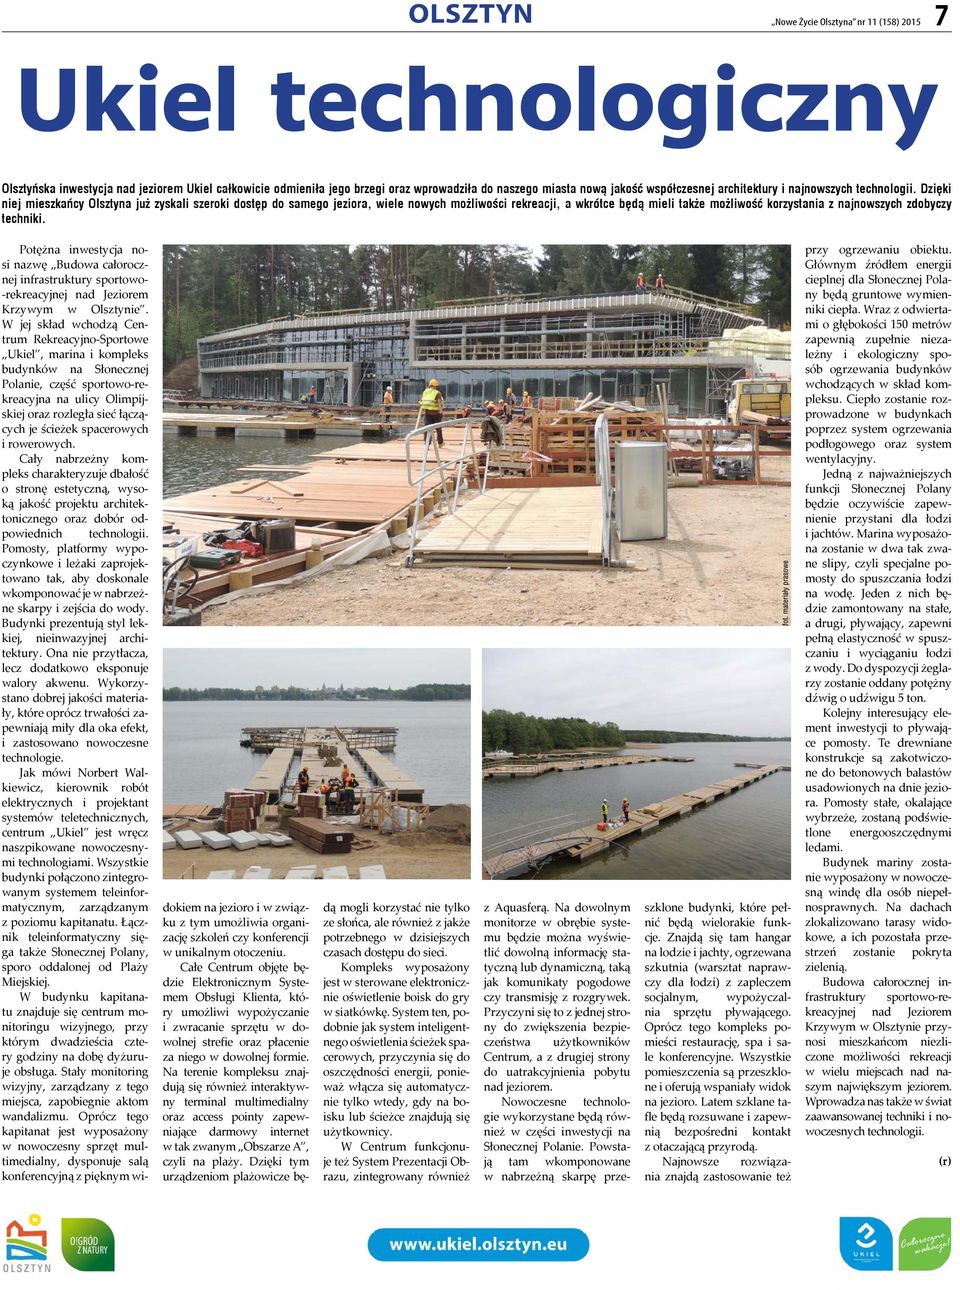 Dzięki niej mieszkańcy Olsztyna już zyskali szeroki dostęp do samego jeziora, wiele nowych możliwości rekreacji, a wkrótce będą mieli także możliwość korzystania z najnowszych zdobyczy techniki.